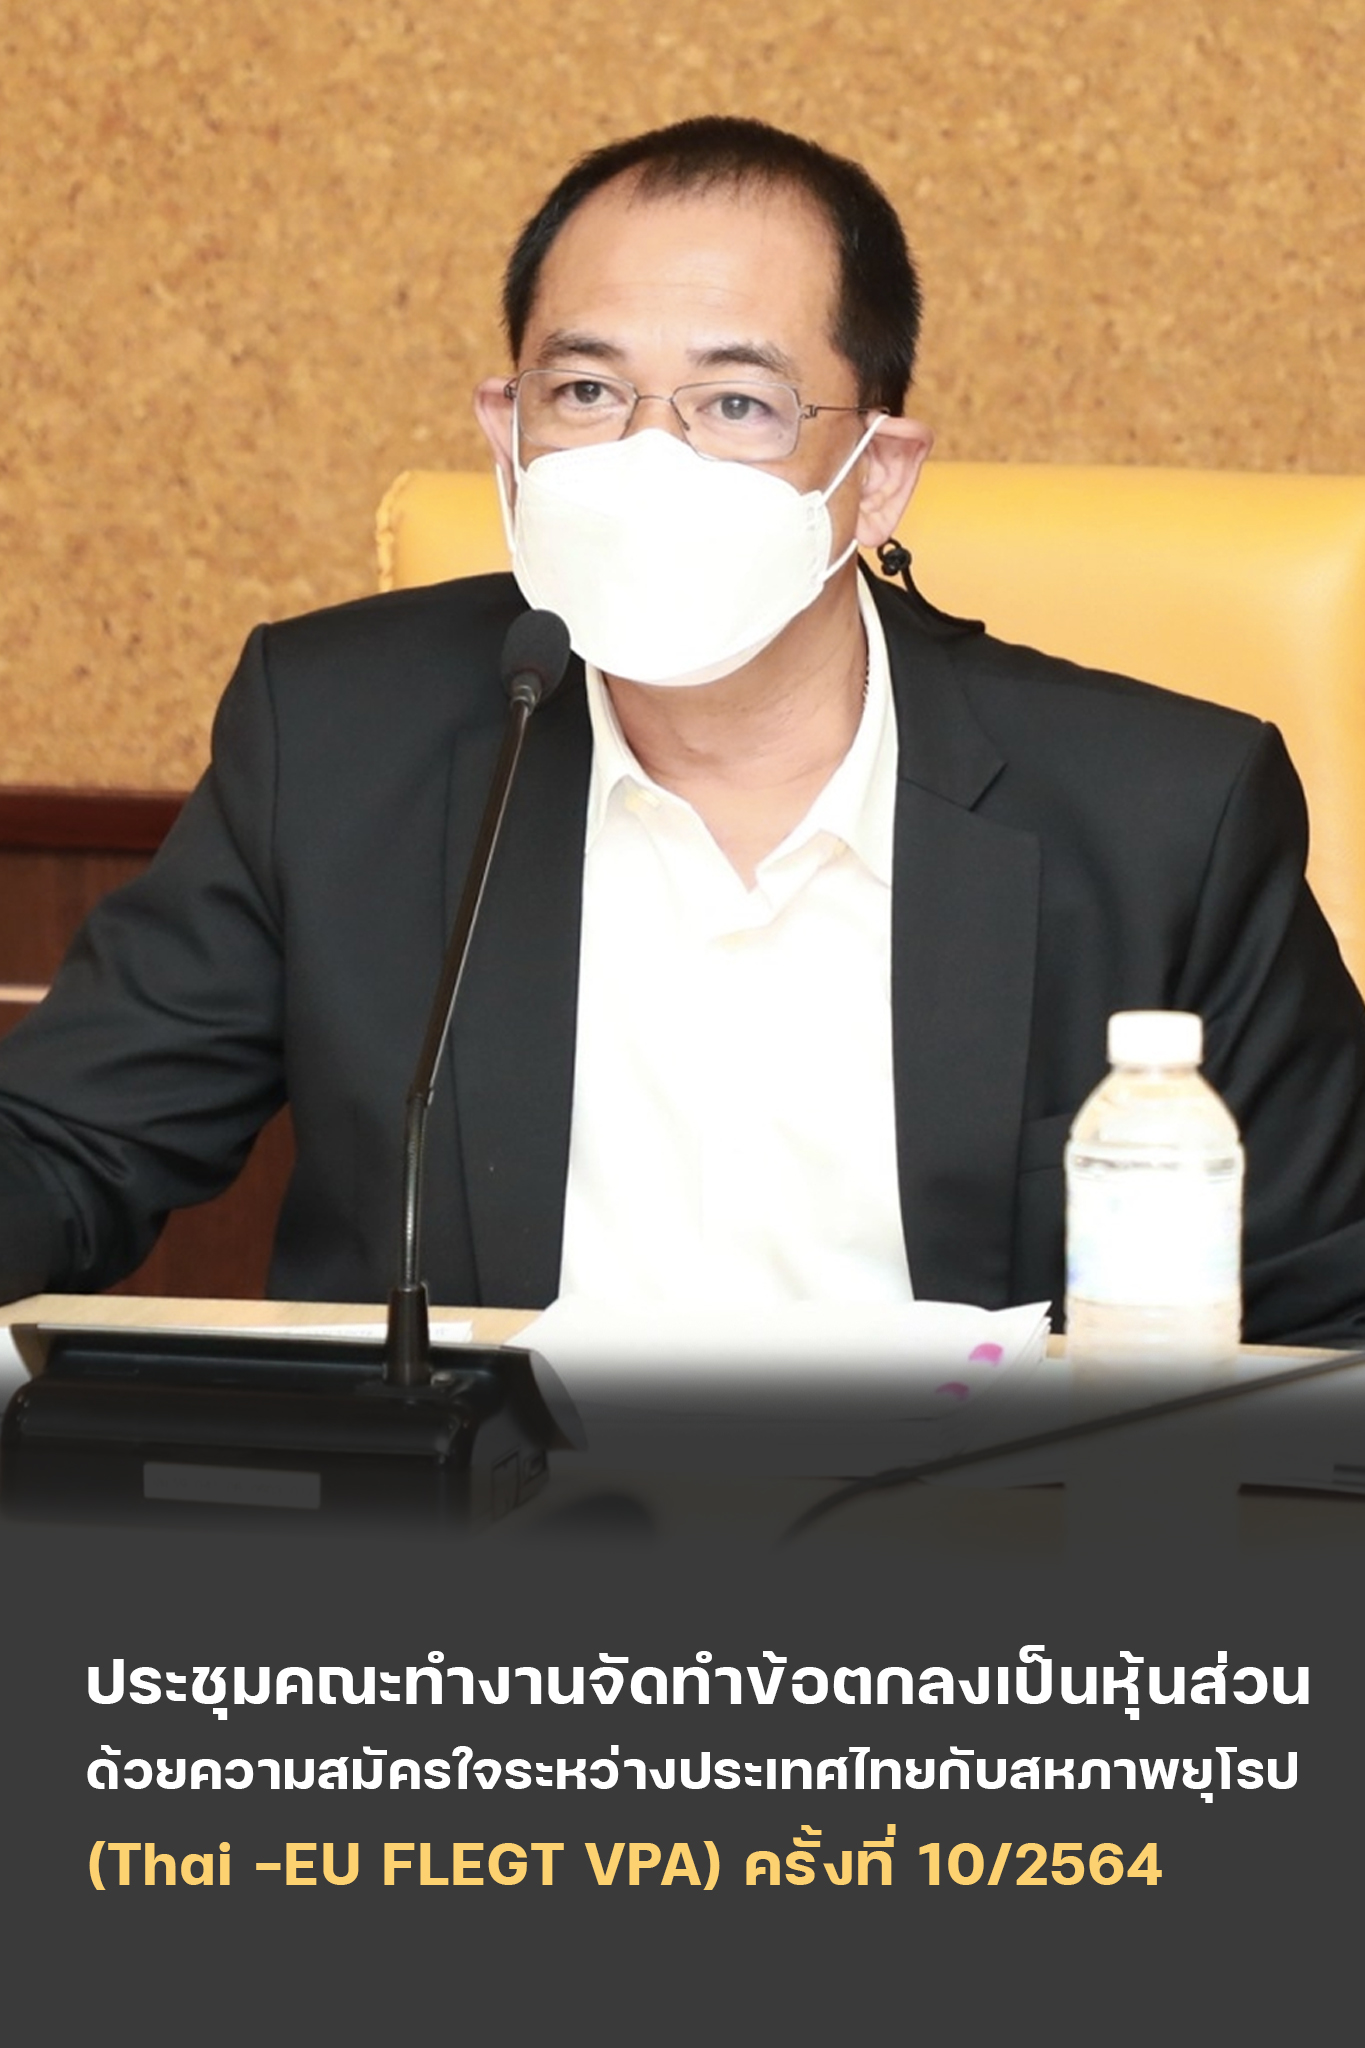 นายสุรชัย อจลบุญ อธิบดีกรมป่าไม้ เป็นประธานการประชุมคณะทำงานจัดทำข้อตกลงเป็นหุ้นส่วนด้วยความสมัครใจระหว่างประเทศไทยกับสหภาพยุโรป (Thai - EU FLEGT VPA) ครั้งที่ 10/2564